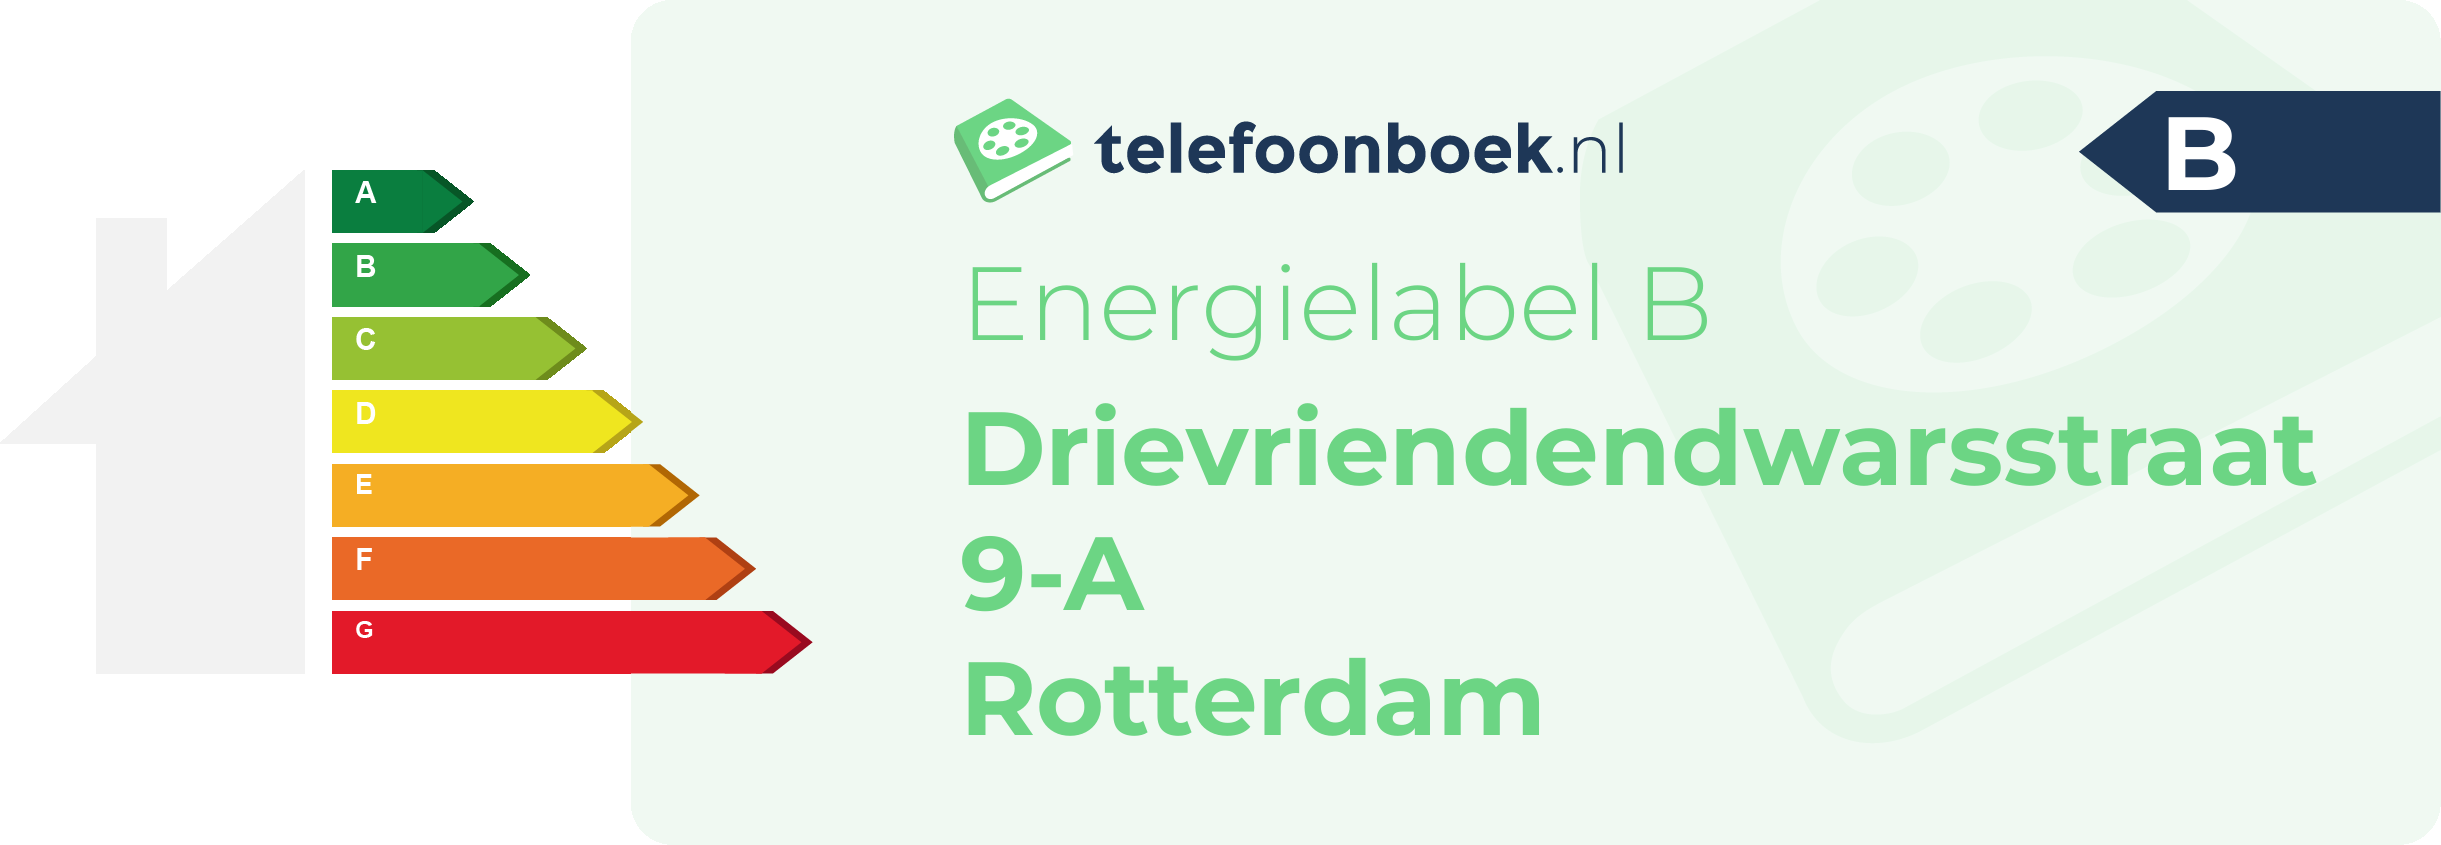 Energielabel Drievriendendwarsstraat 9-A Rotterdam